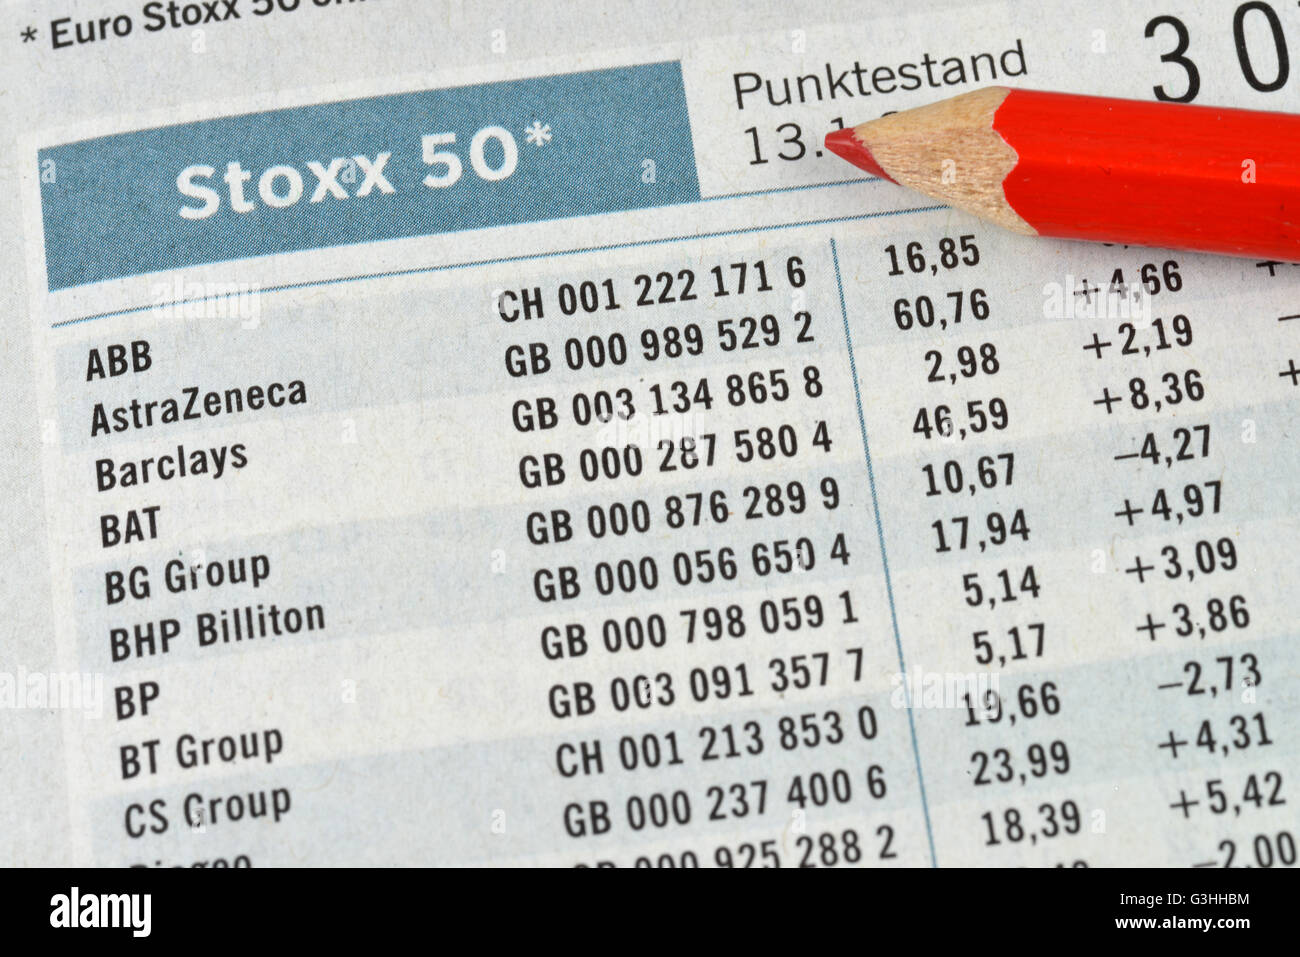 Zeitung, Boersenteil, Aktienmarkt, Euro Stoxx 50 Stock Photo